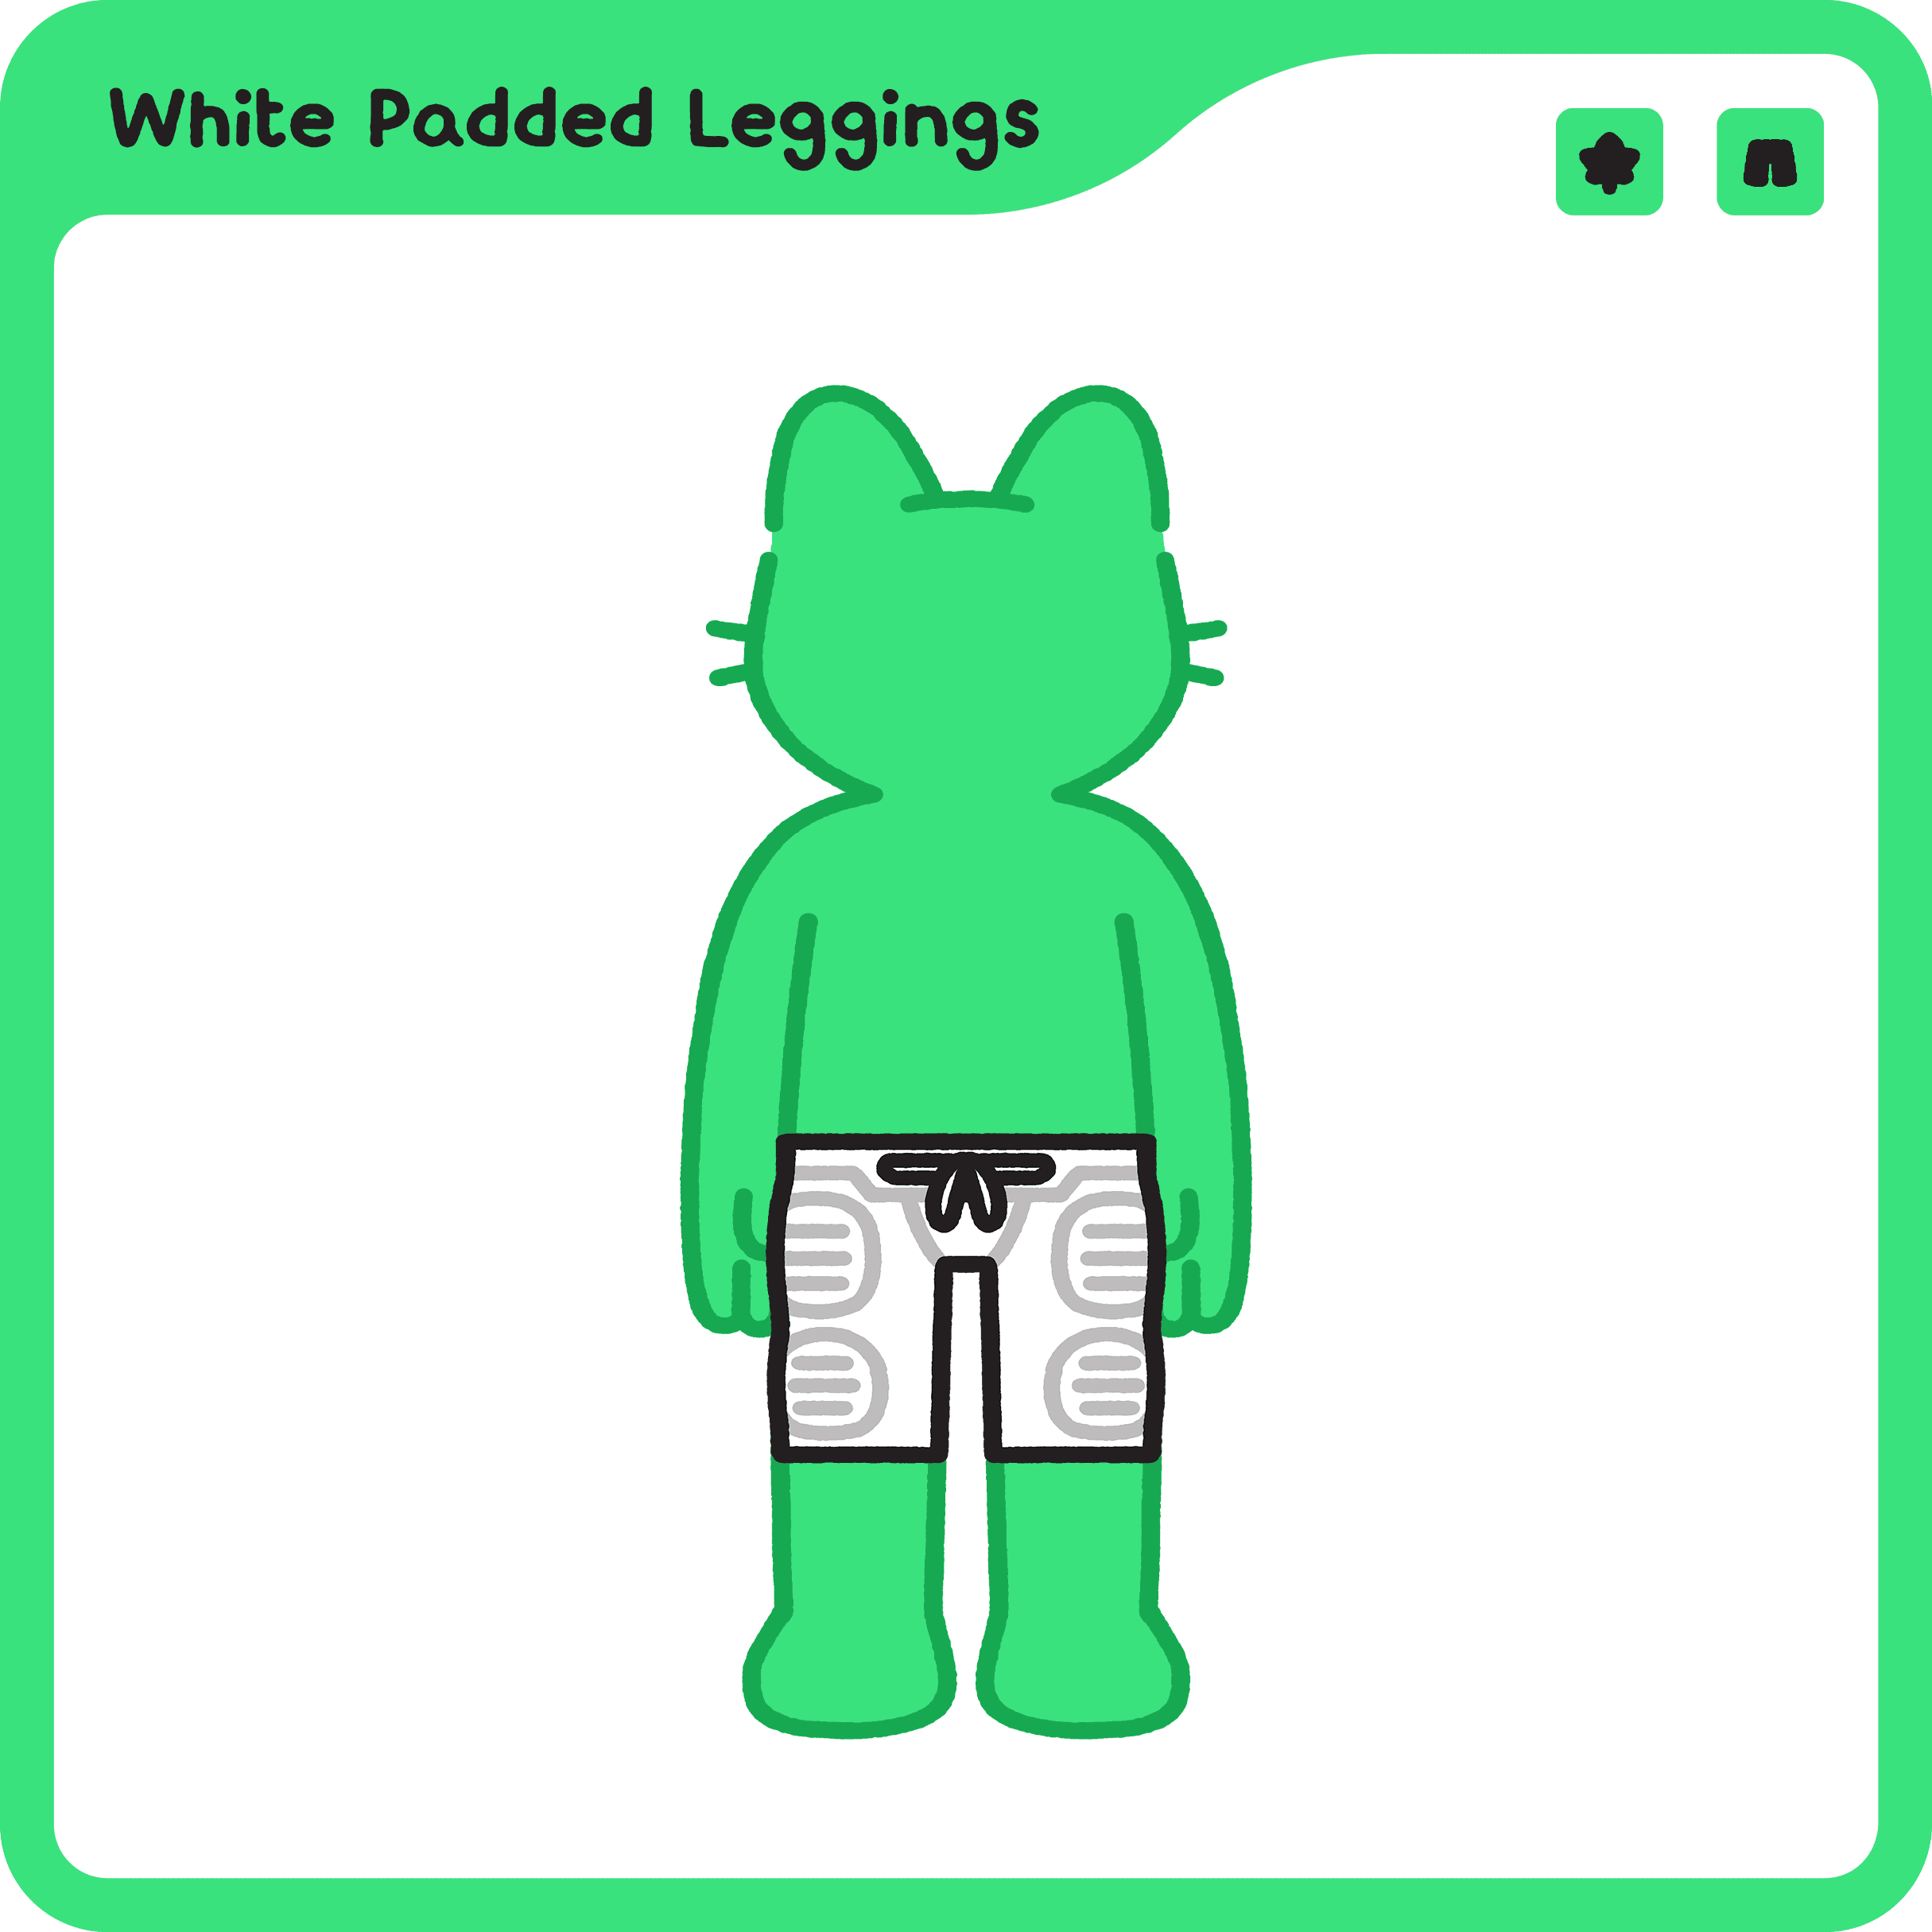 White Padded Leggings